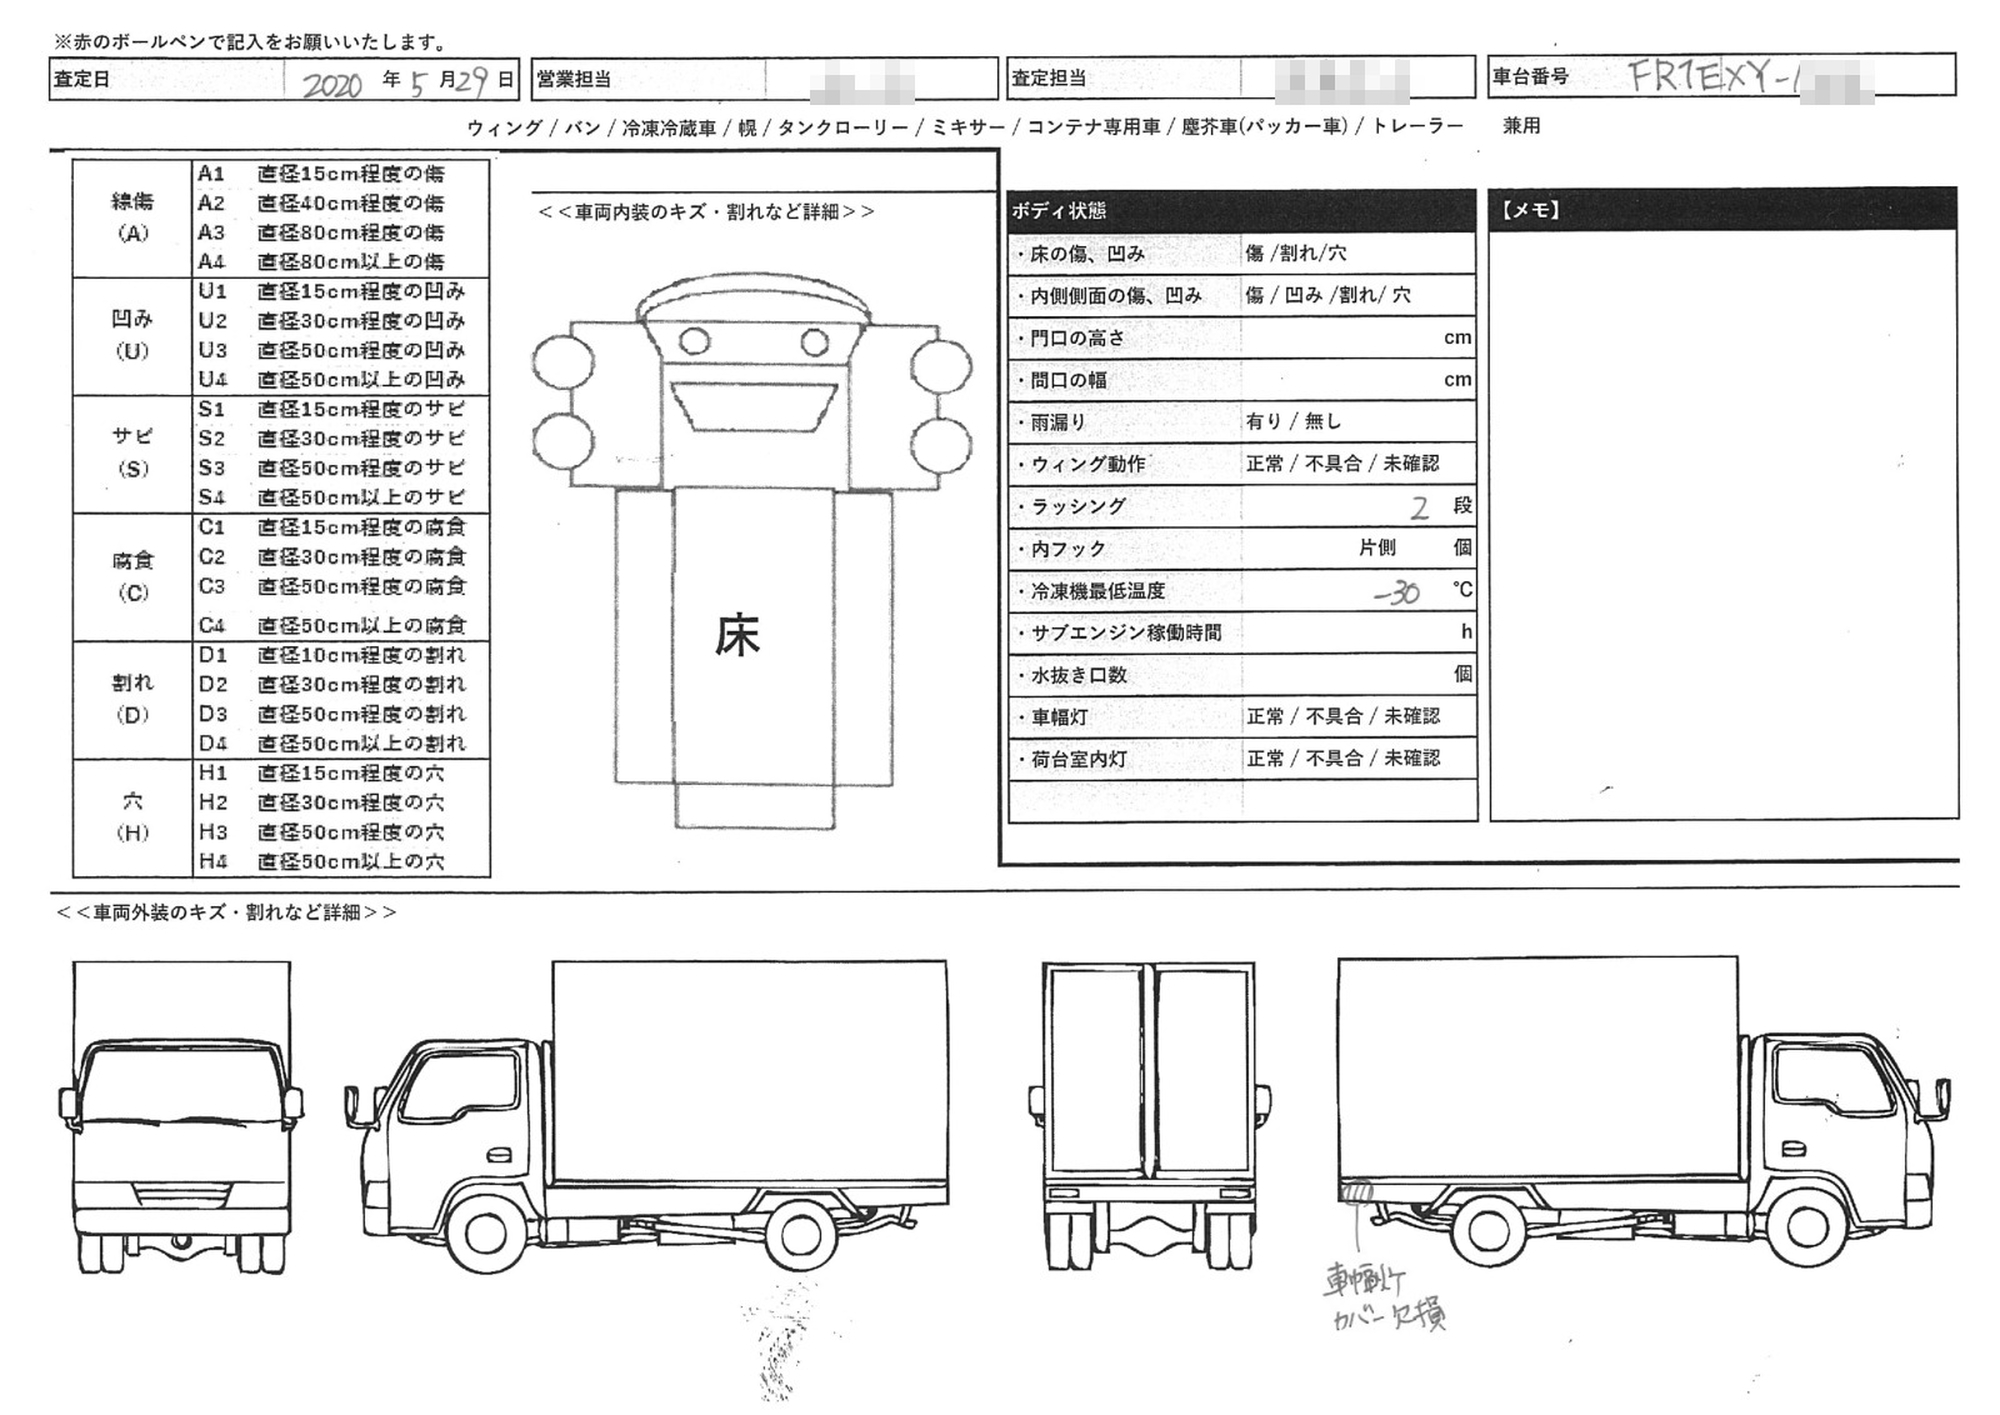 日野 プロフィア 大型 冷凍冷蔵バン Bkg Fr1exyg 6109 中古トラックのオンライン売買なら トラッカーズマーケット